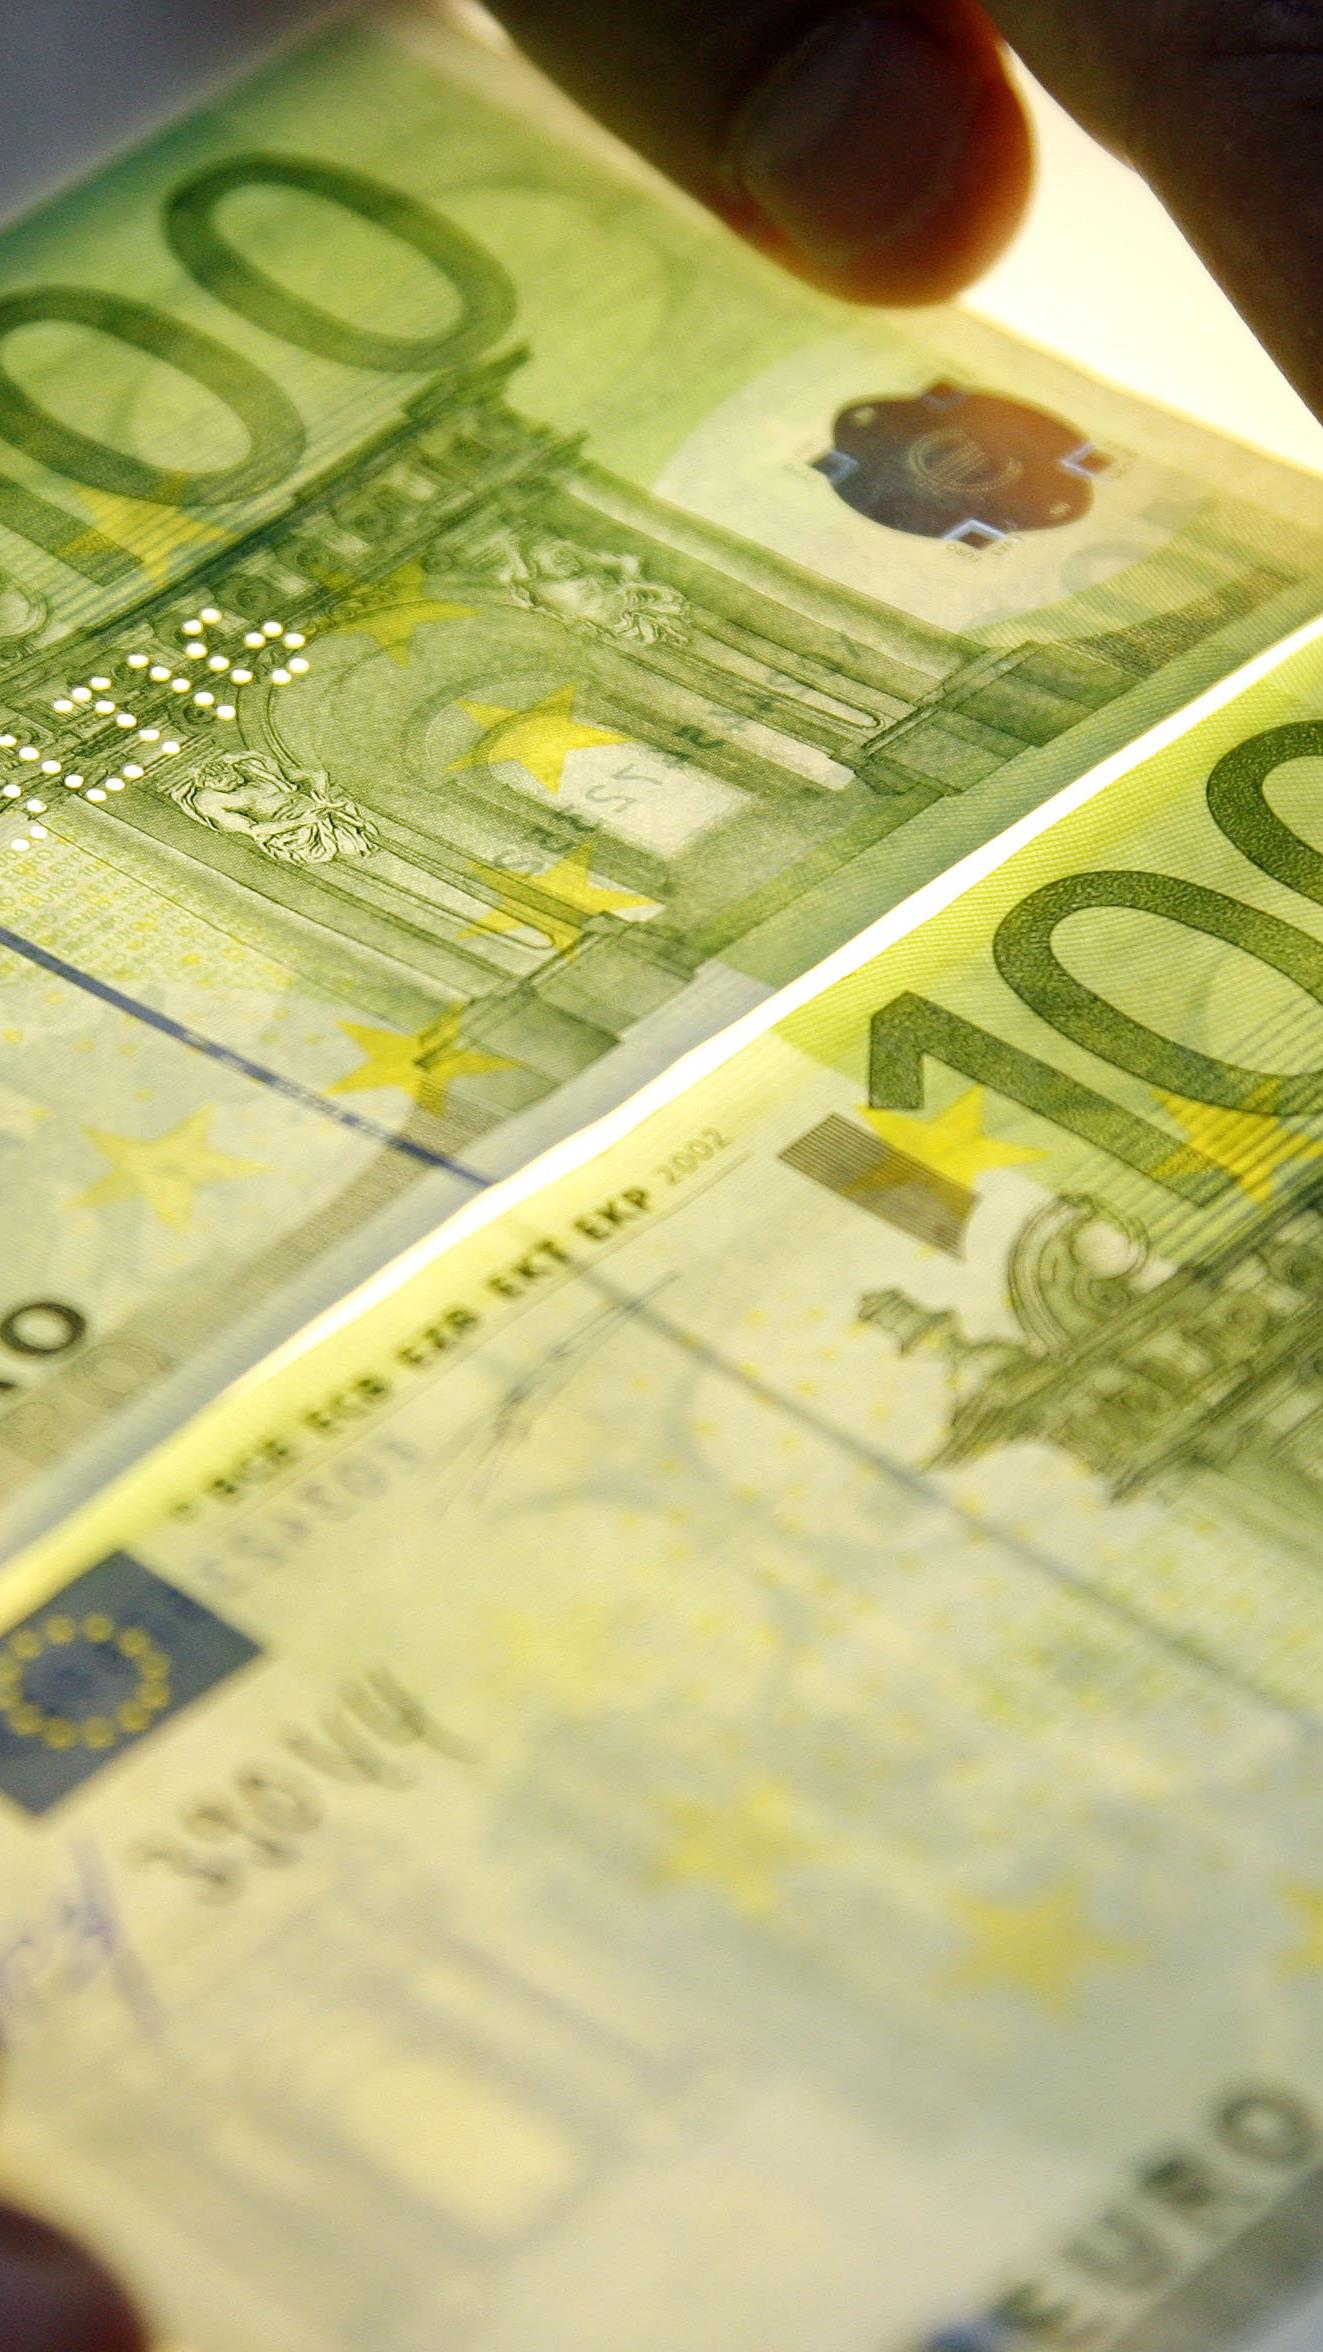 Das Bild zeigt einen echten, rechts unten, und einen gefälschten, links oben, 100 Euro-Schein.